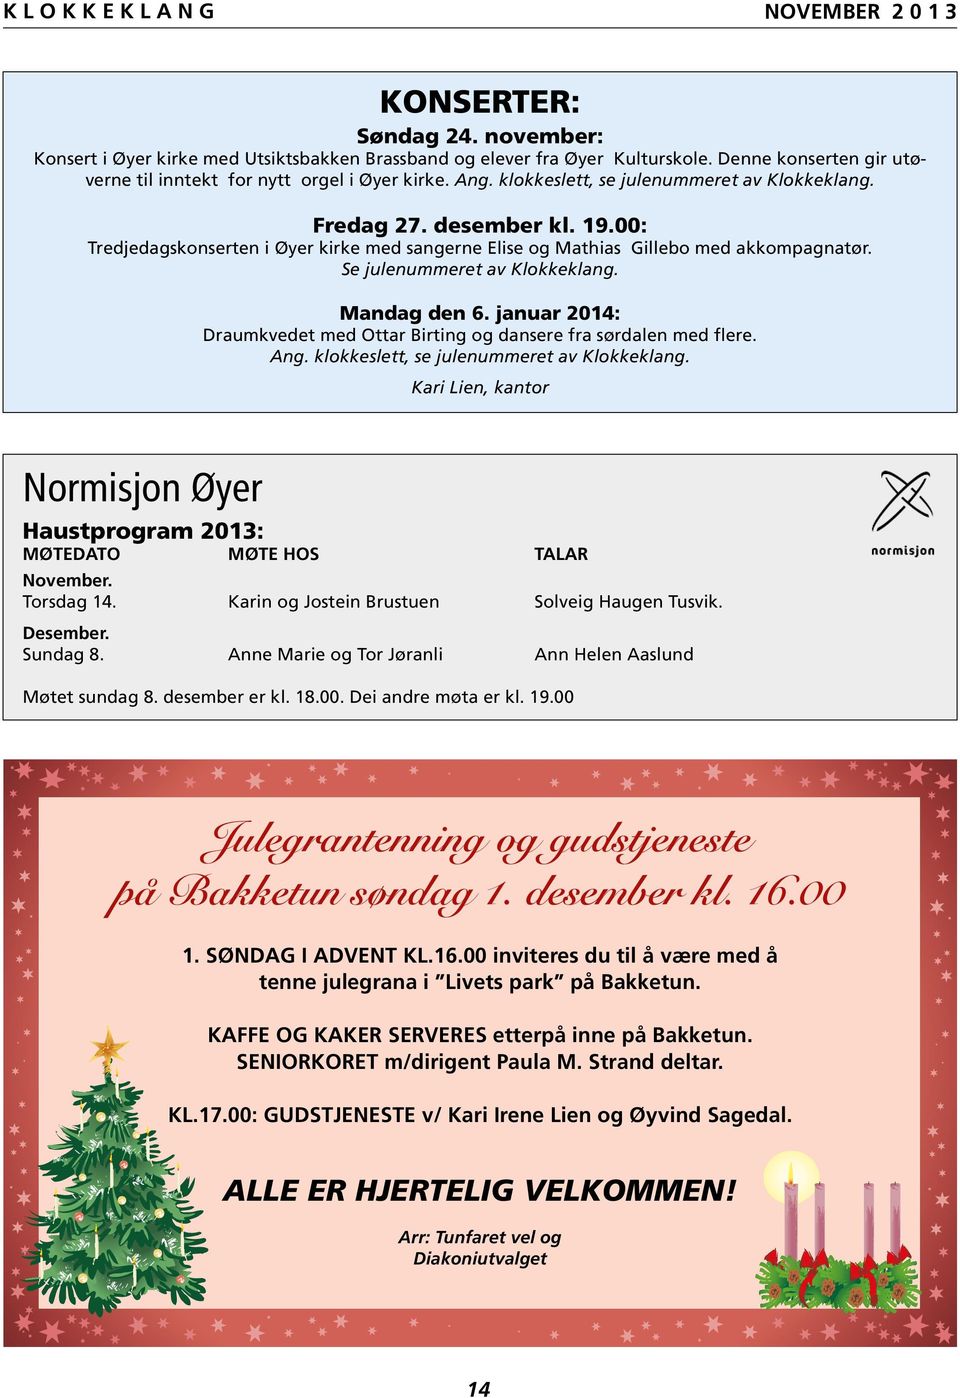 Mandag den 6. januar 2014: Draumkvedet med Ottar Birting og dansere fra sørdalen med flere. Ang. klokkeslett, se julenummeret av Klokkeklang.